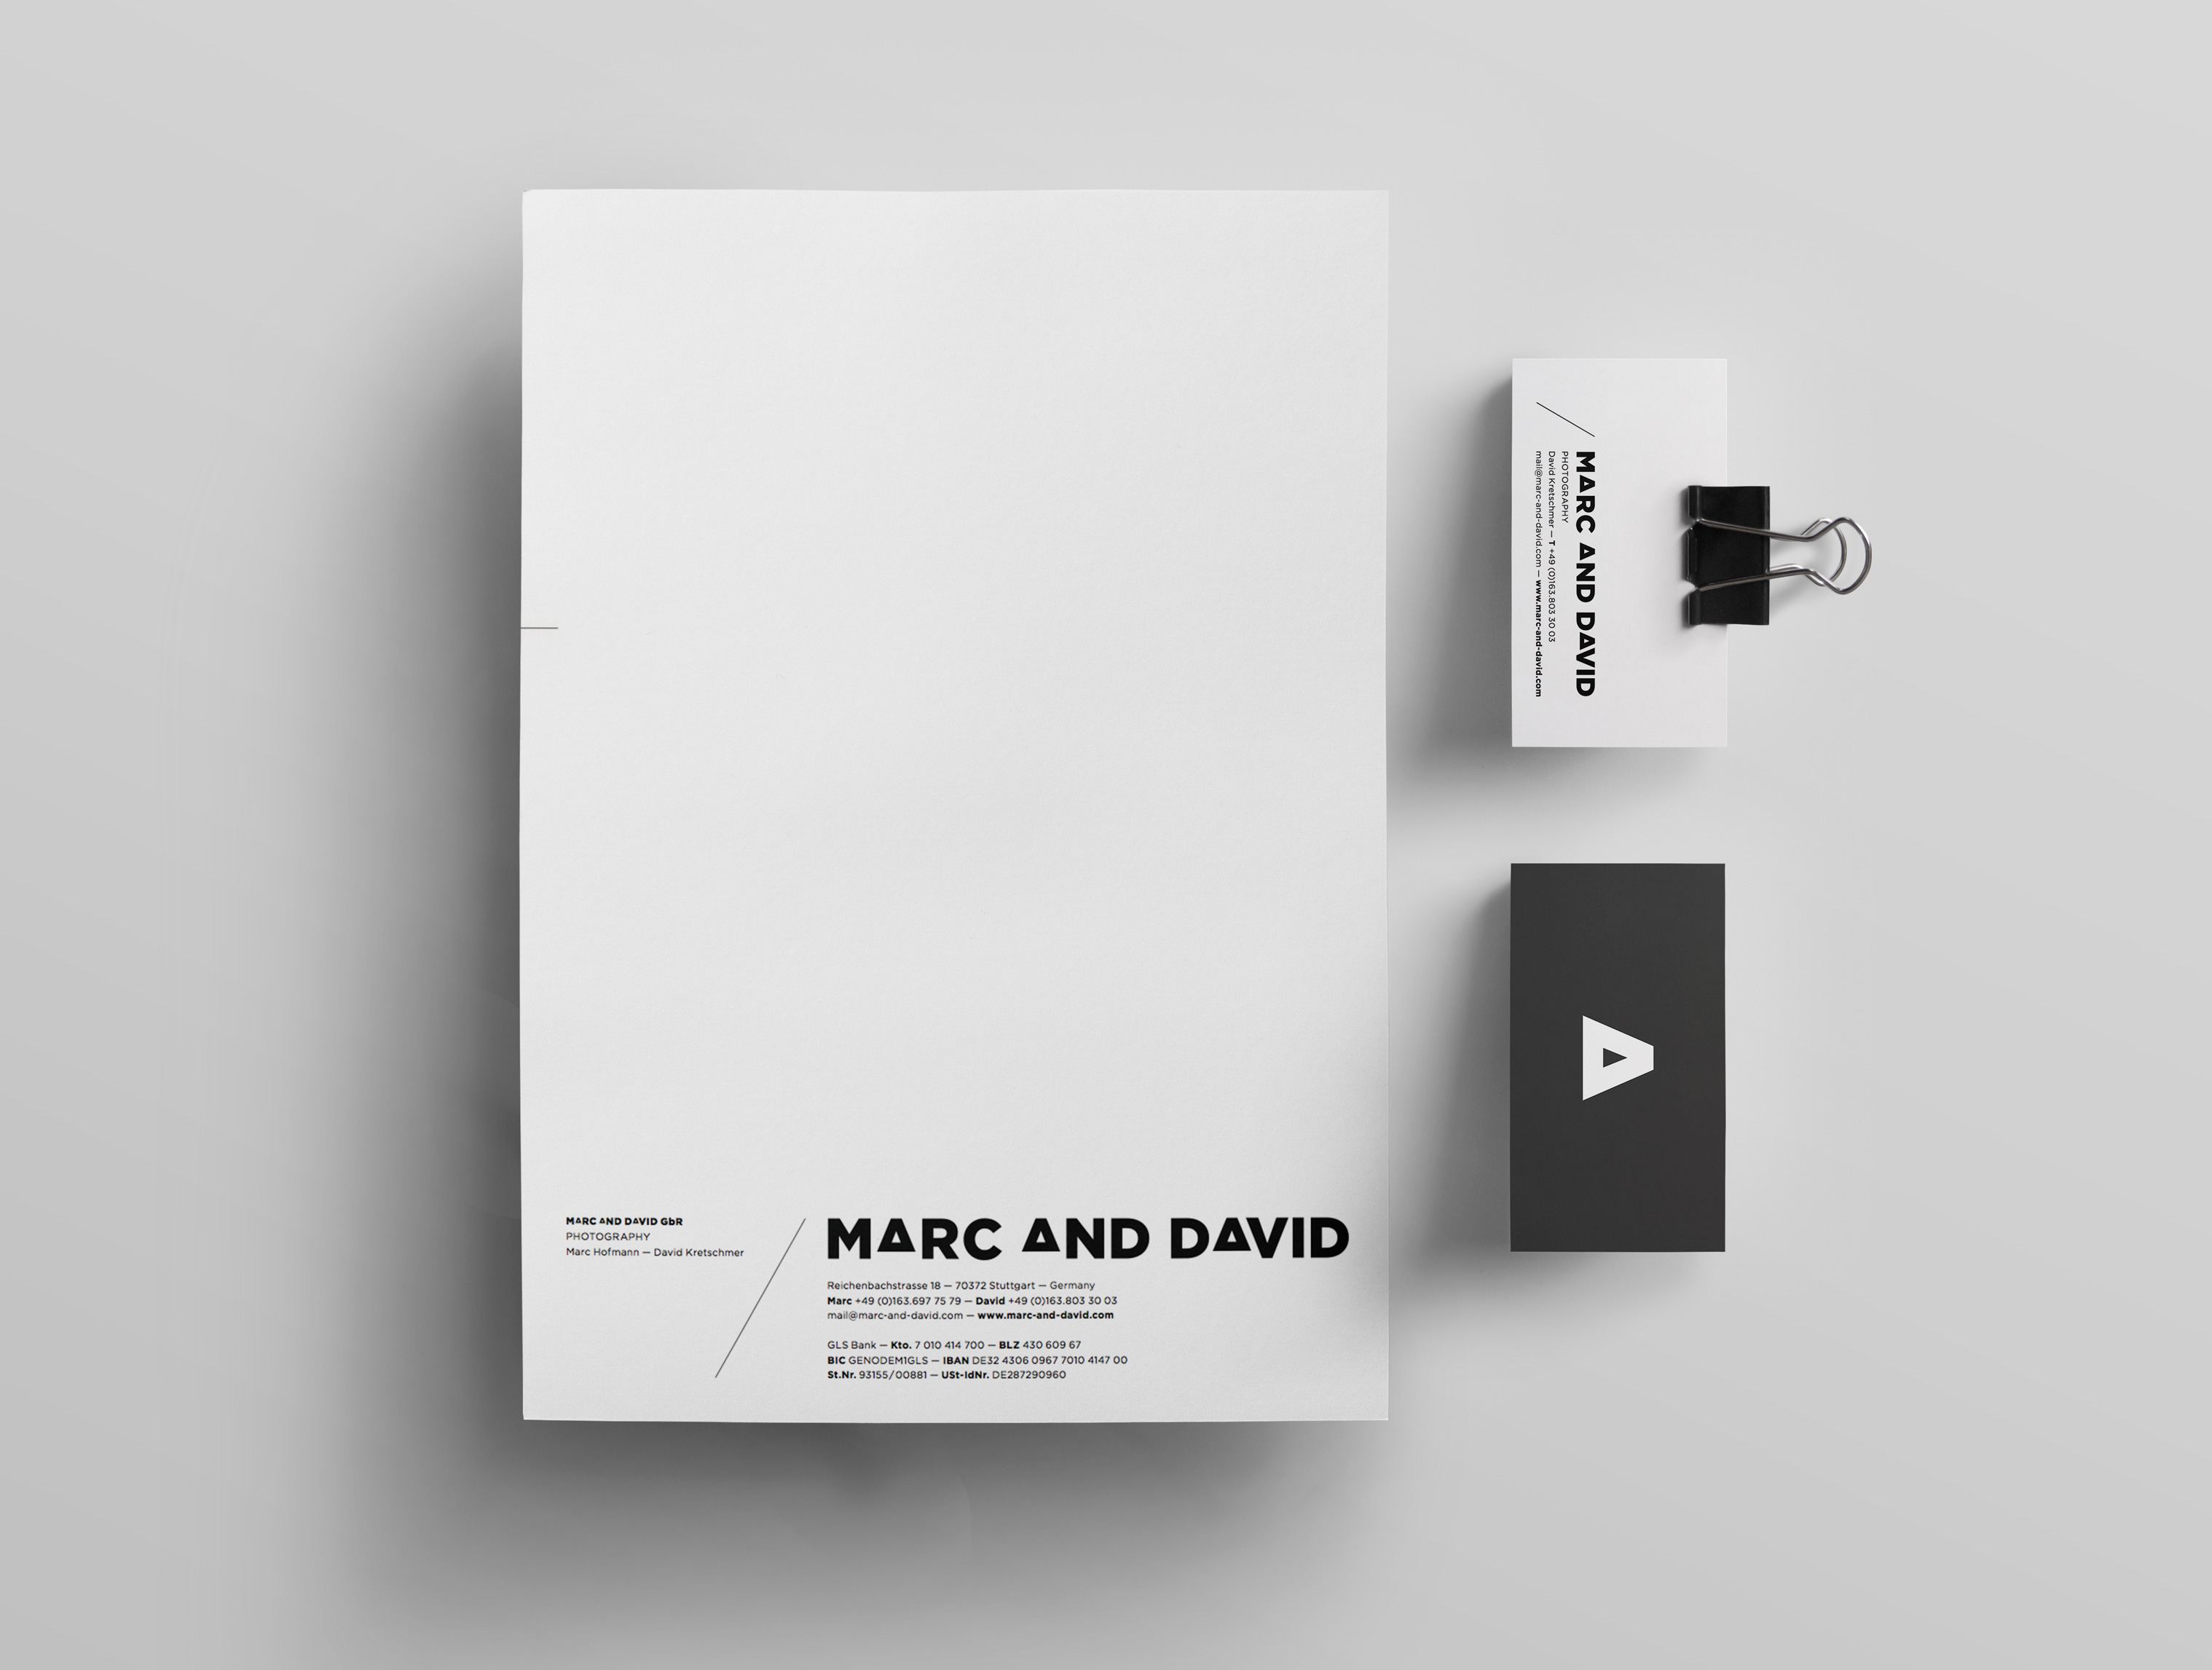 5DMBO-Studio-für-Gestaltung-marc-and-david